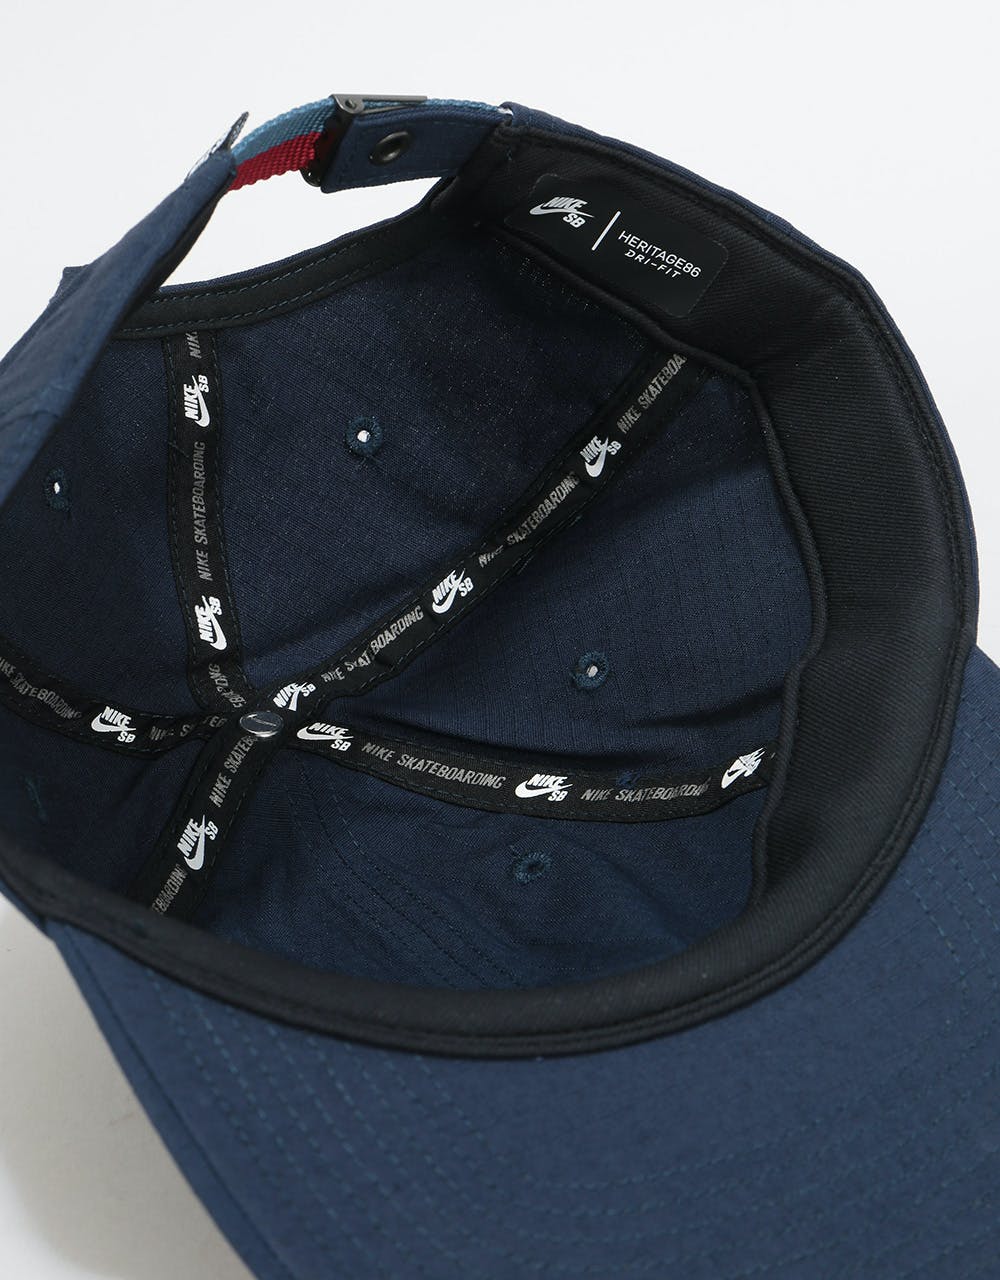 Nike SB H86 Flatbill Cap - Obsidian